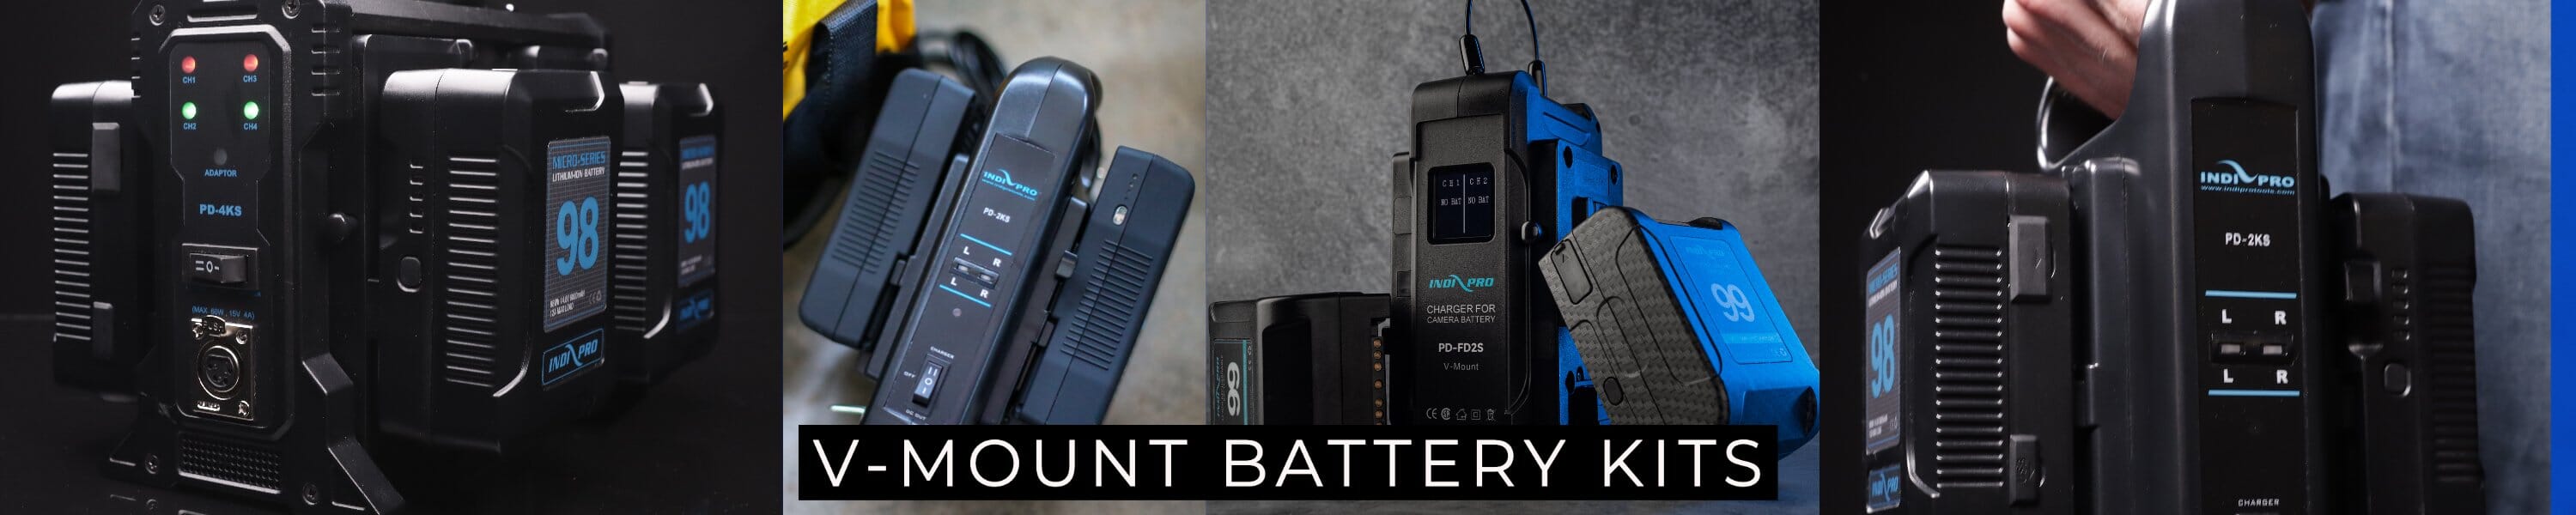 V-Mount Battery Kits